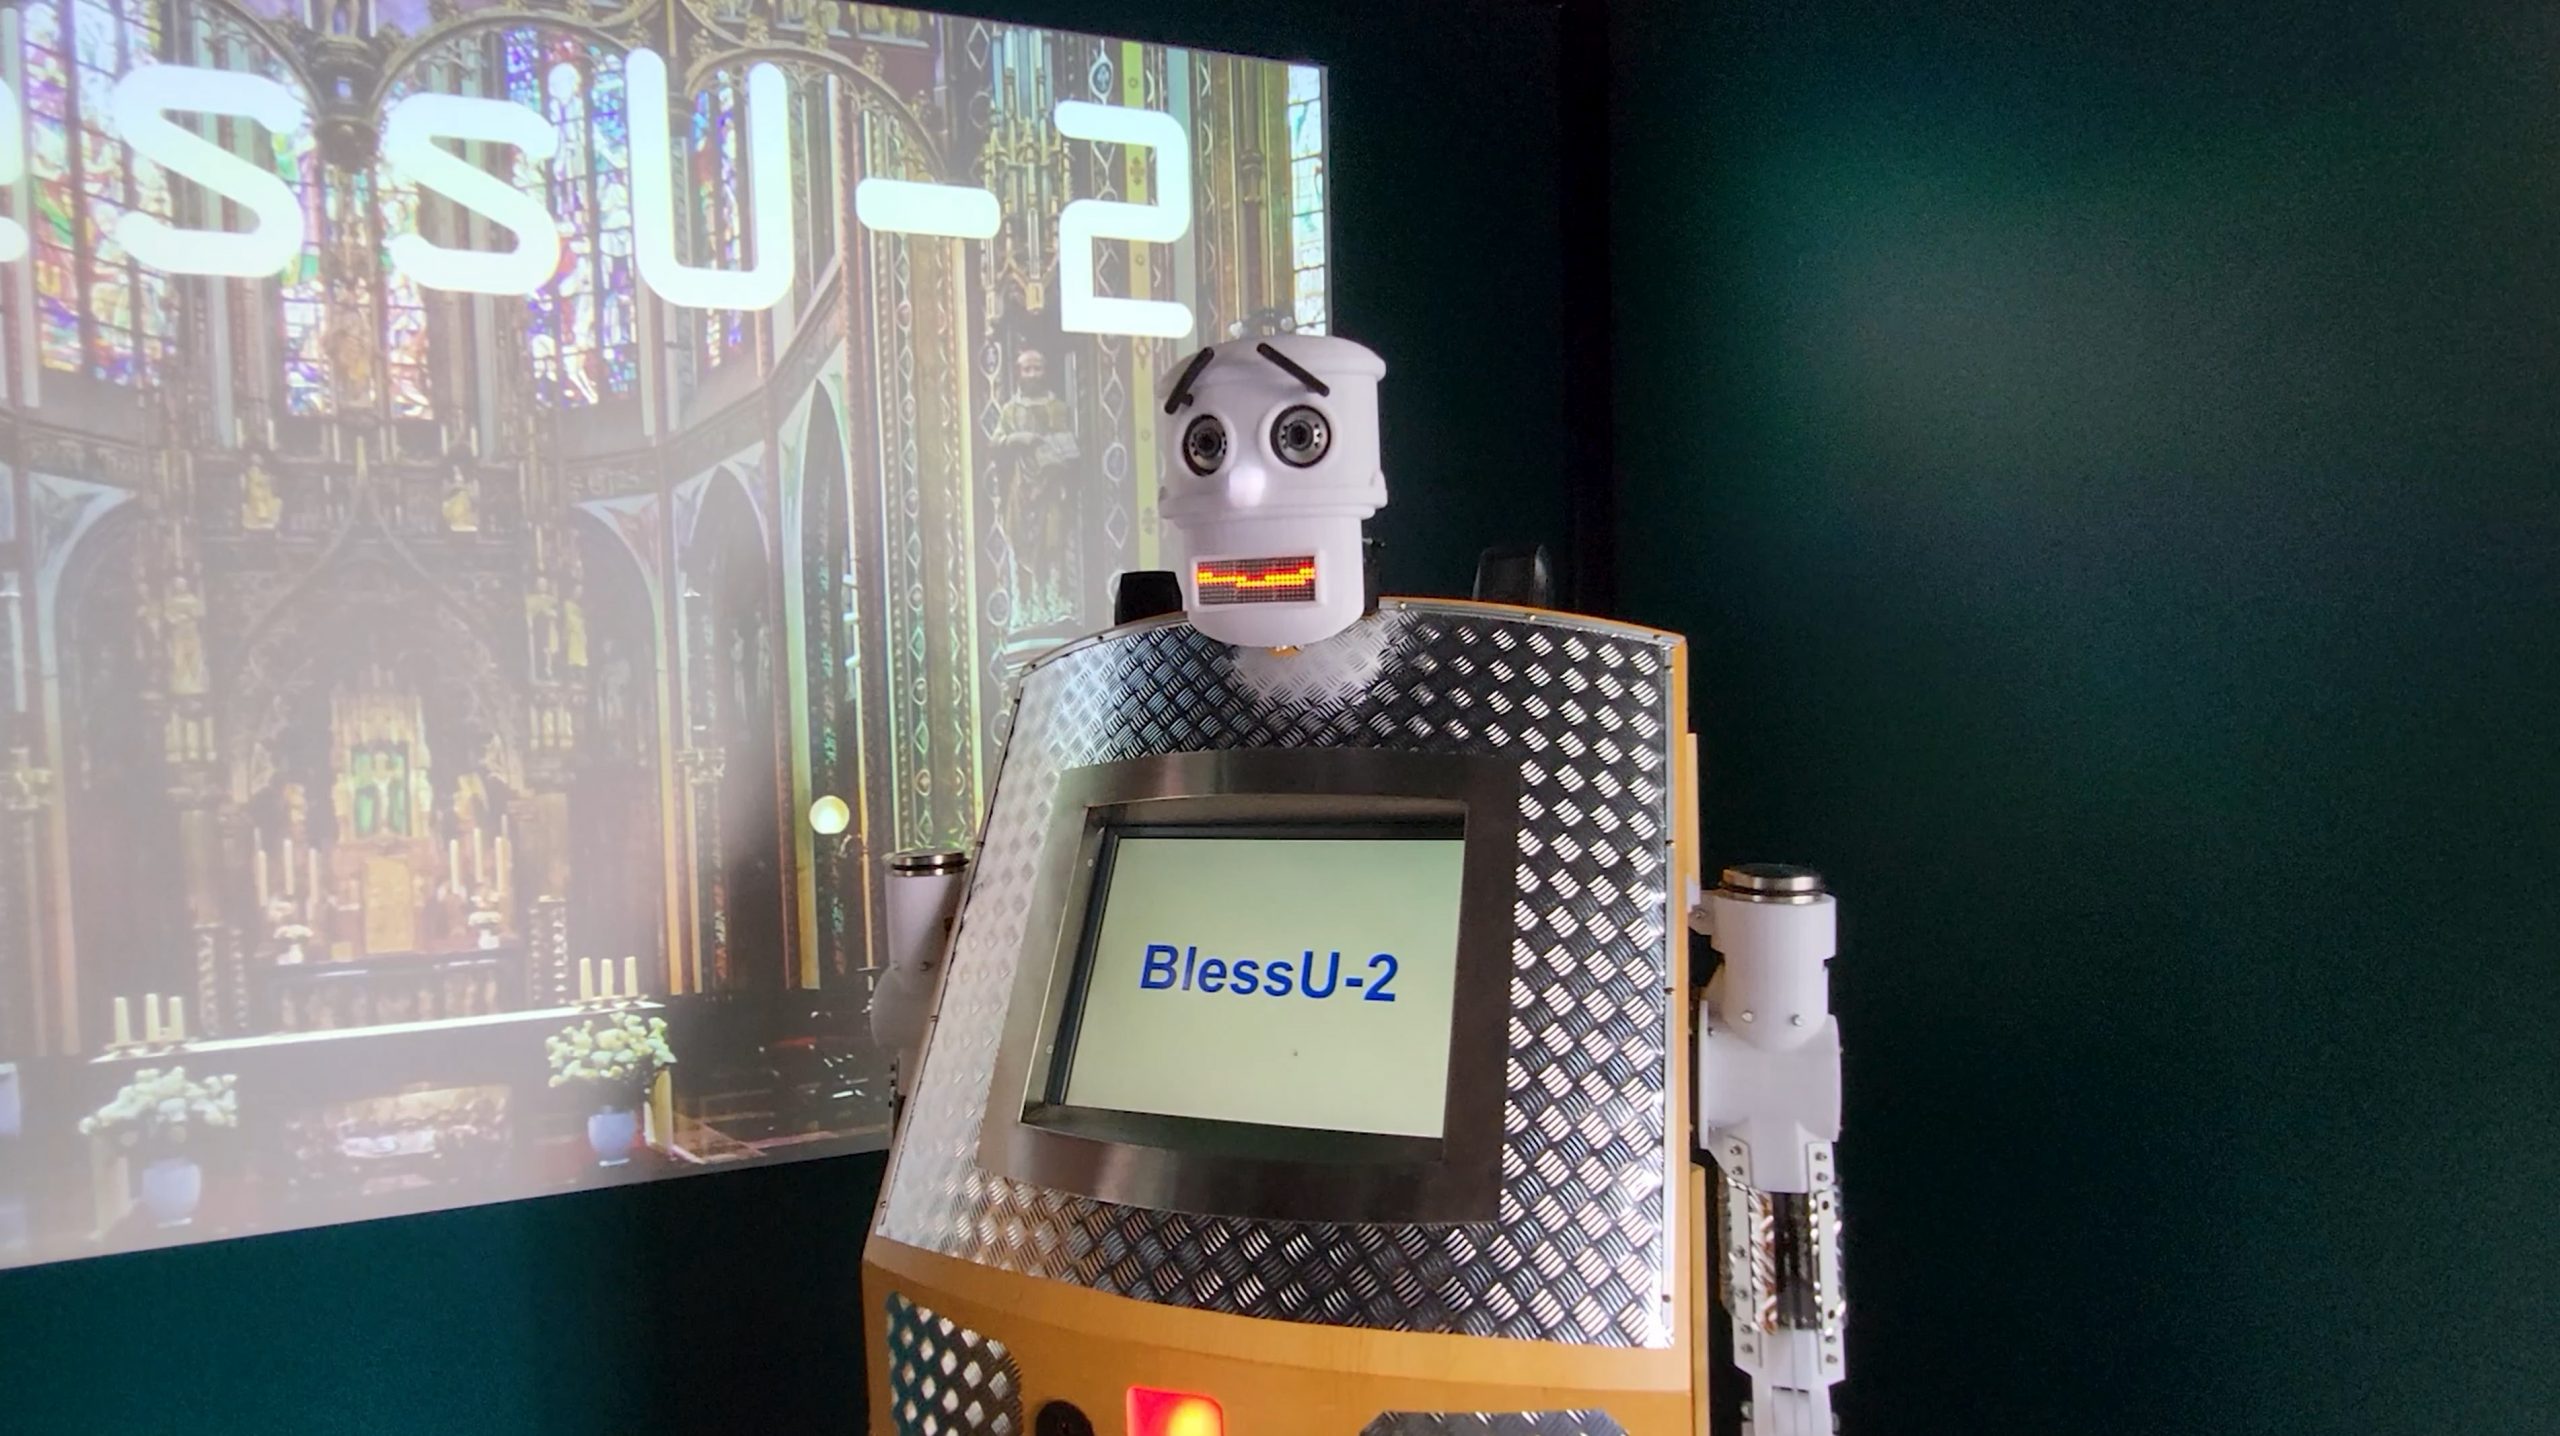 BlessU robot